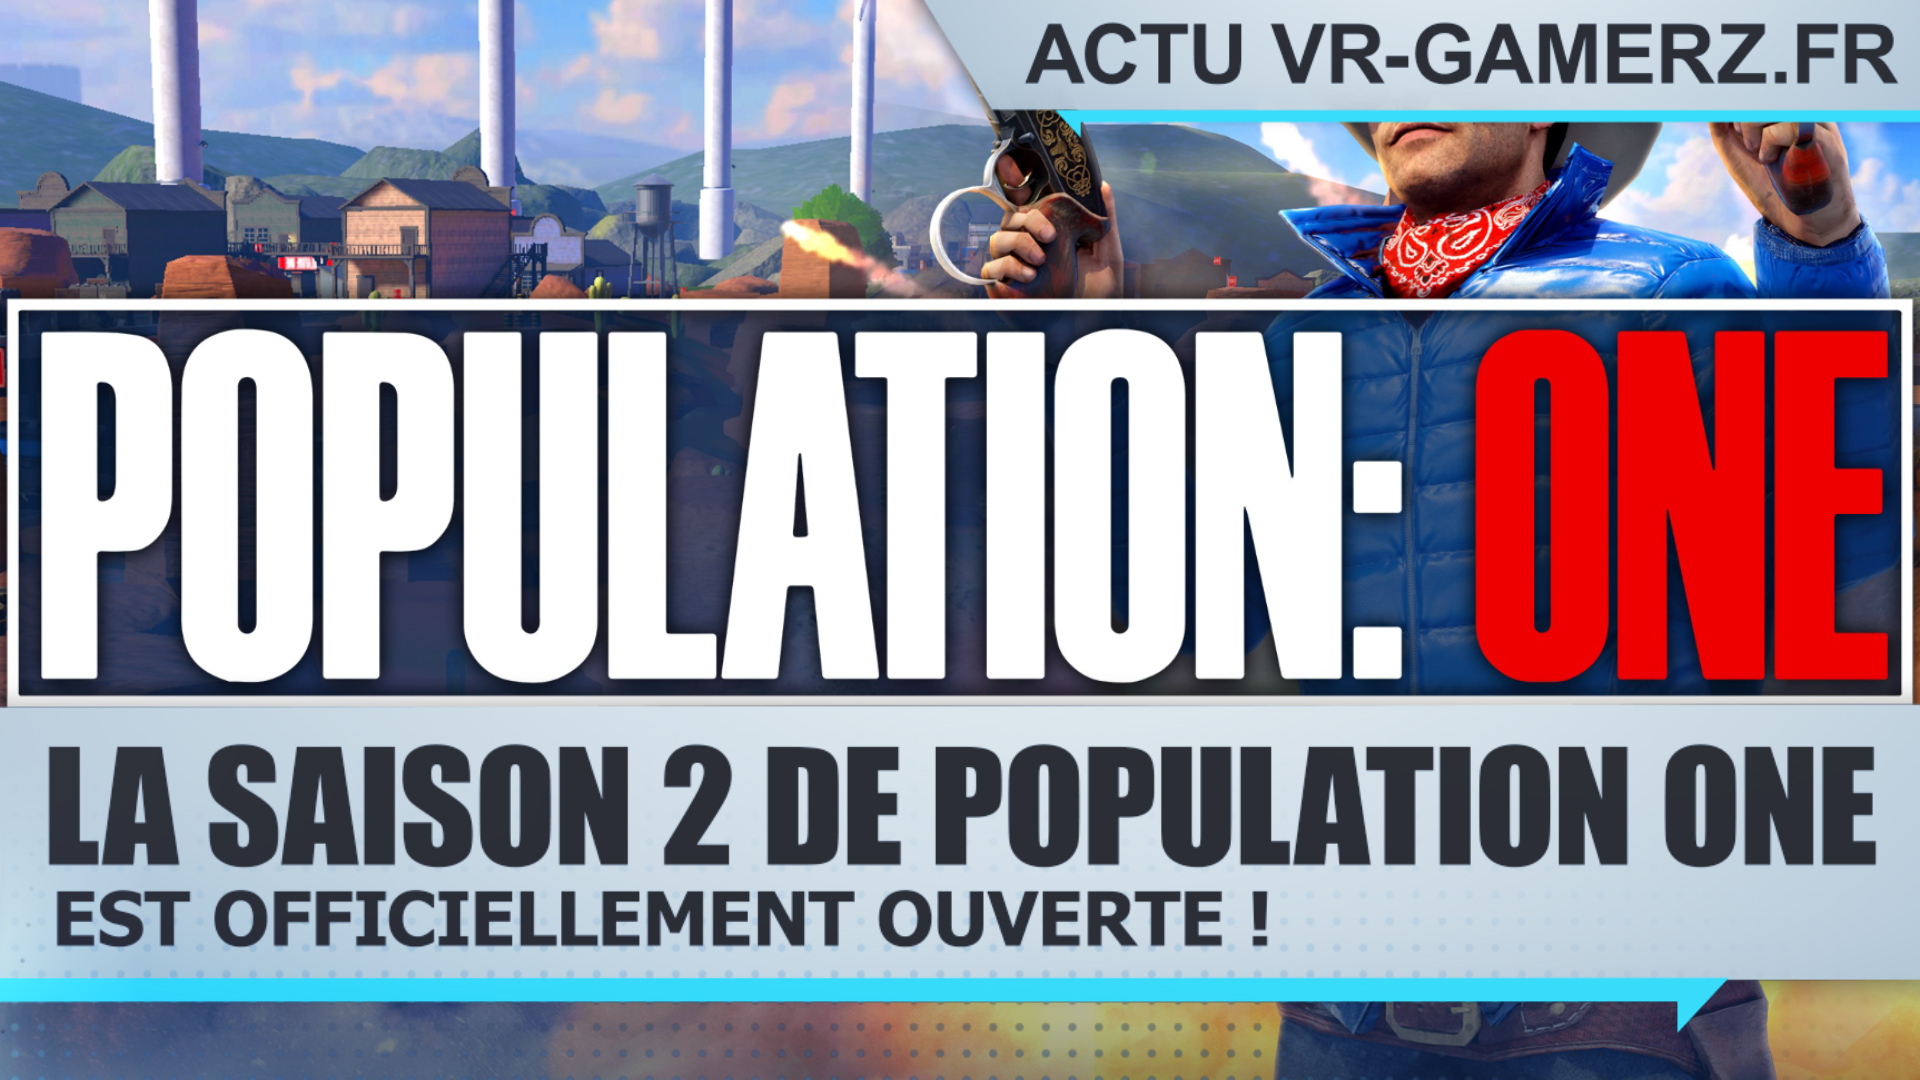 La saison 2 de Population One est officiellement ouverte !